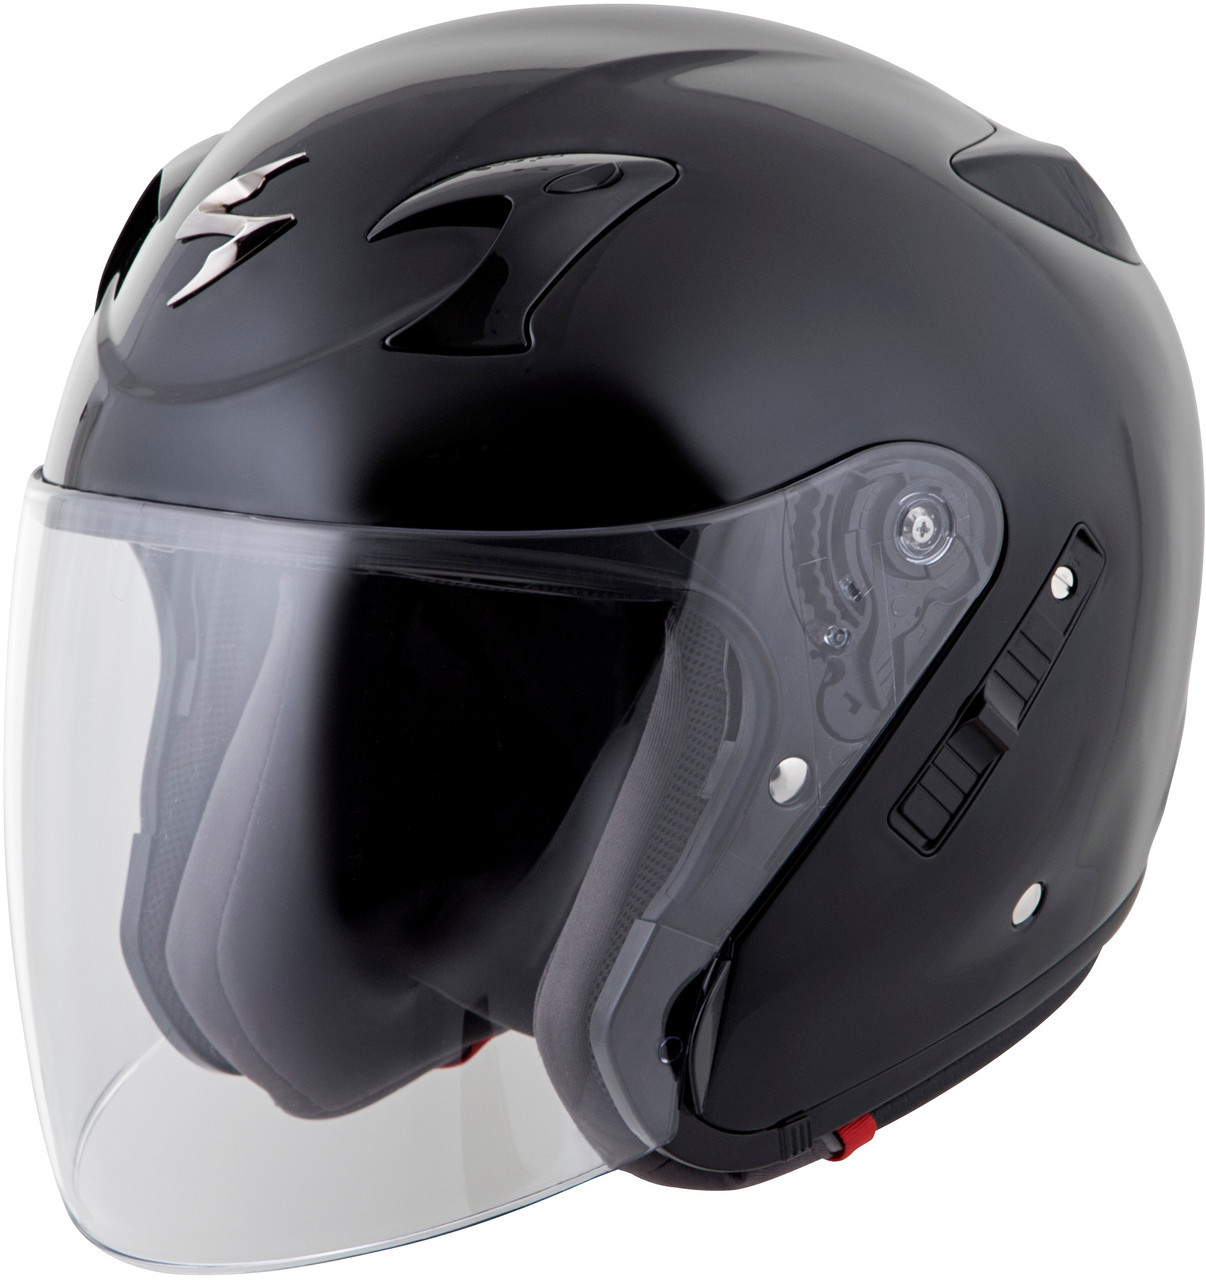 Exo-ct220 Open-face Helmet Neon Xs